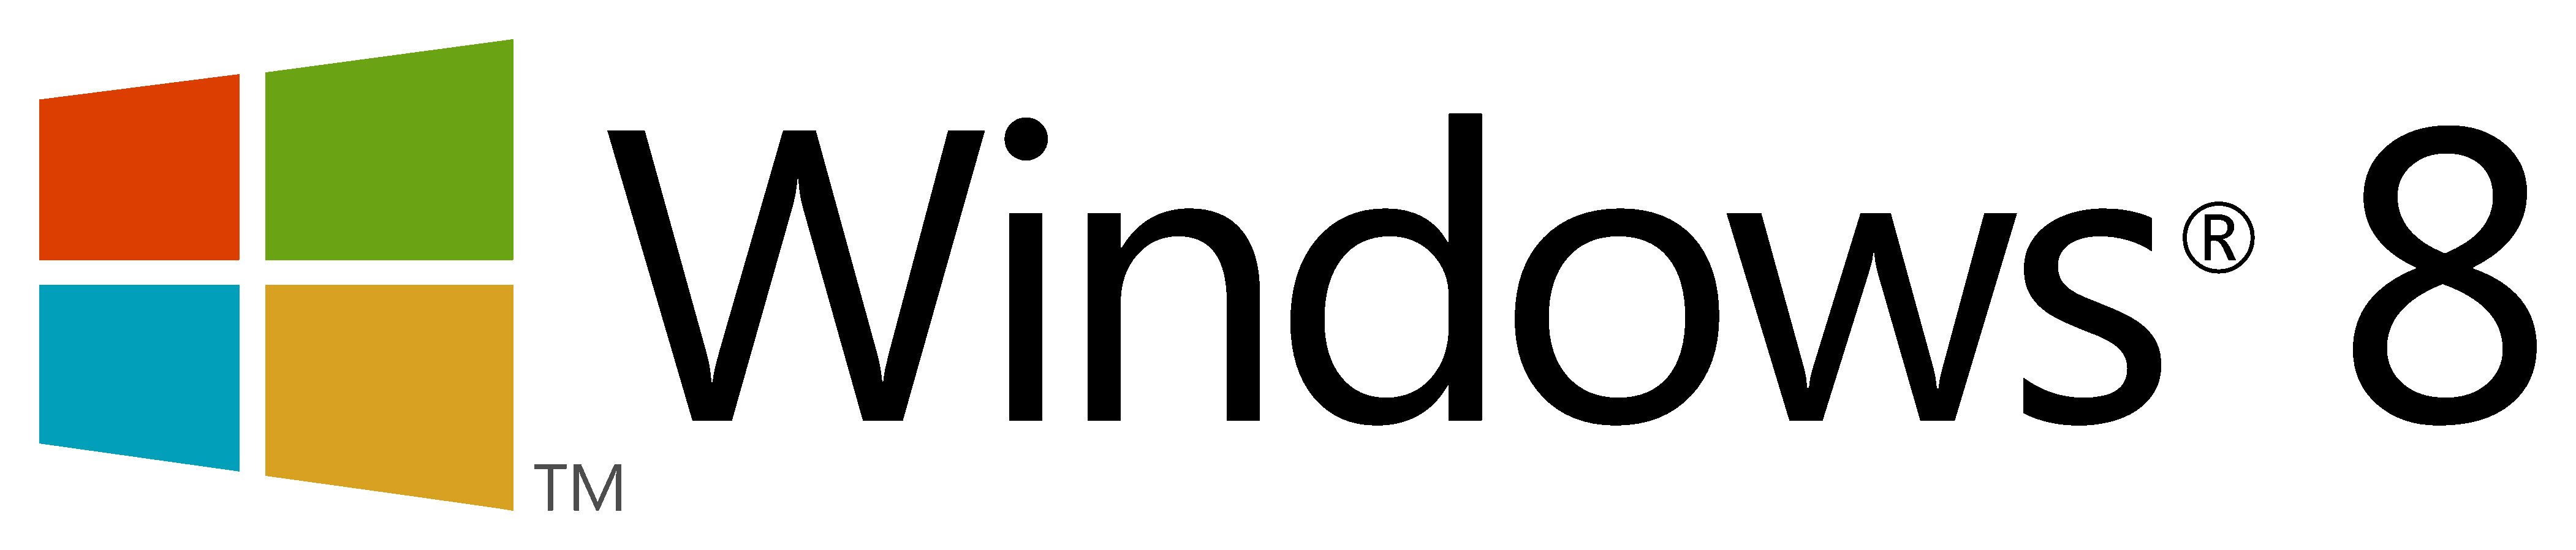 标题microsoft 微软 彩色windows   logo 图片说明